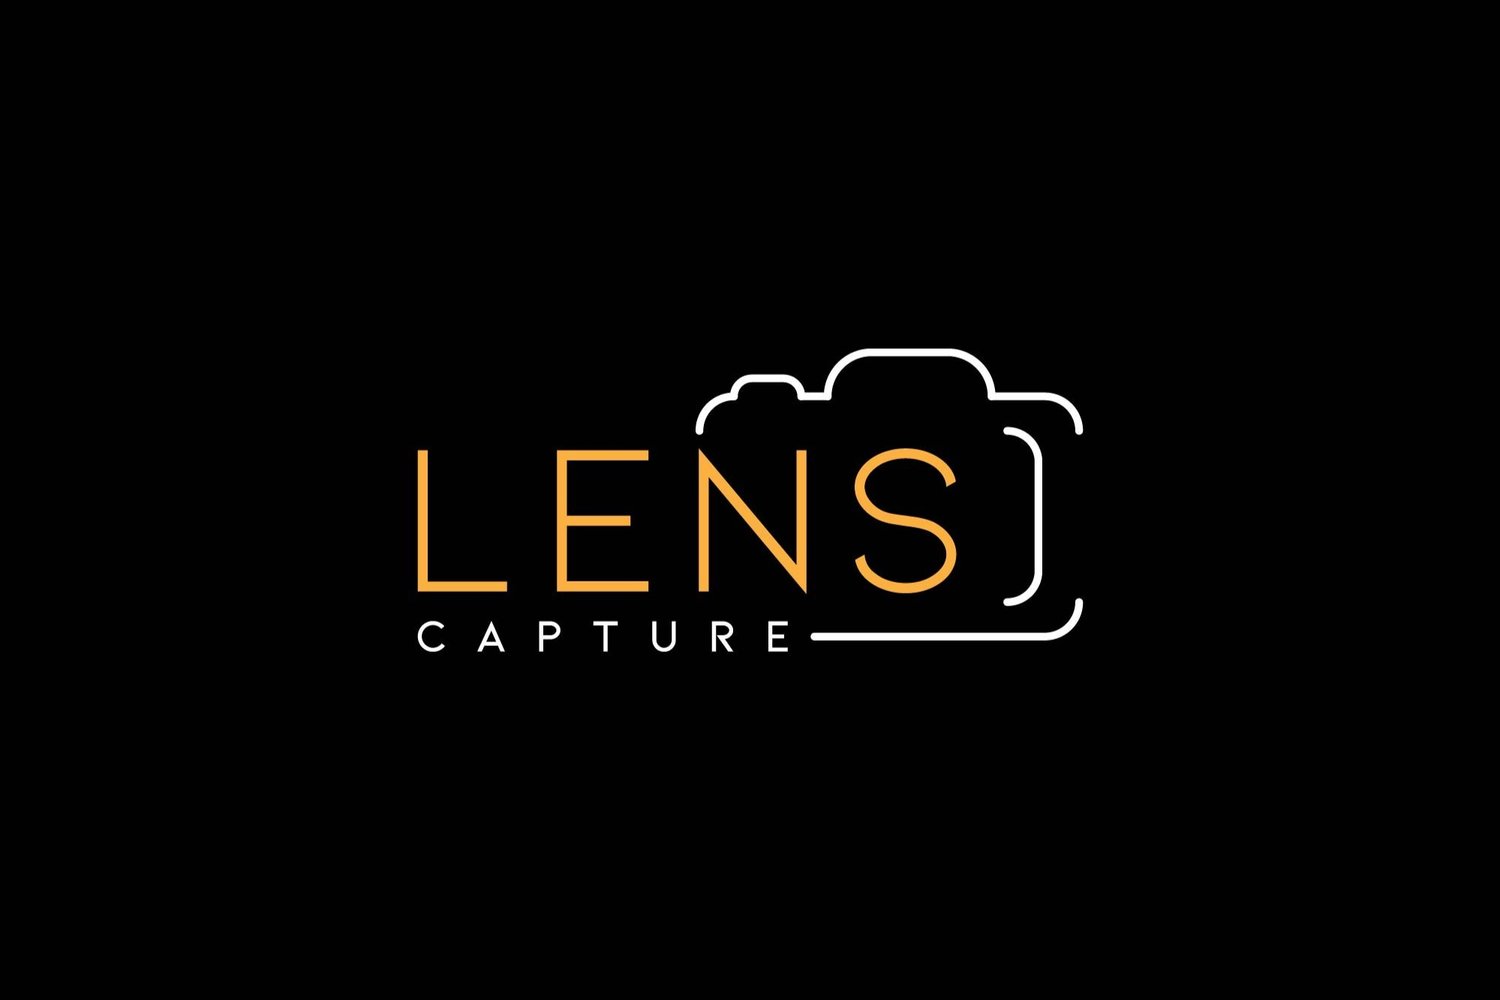 Lens Capture